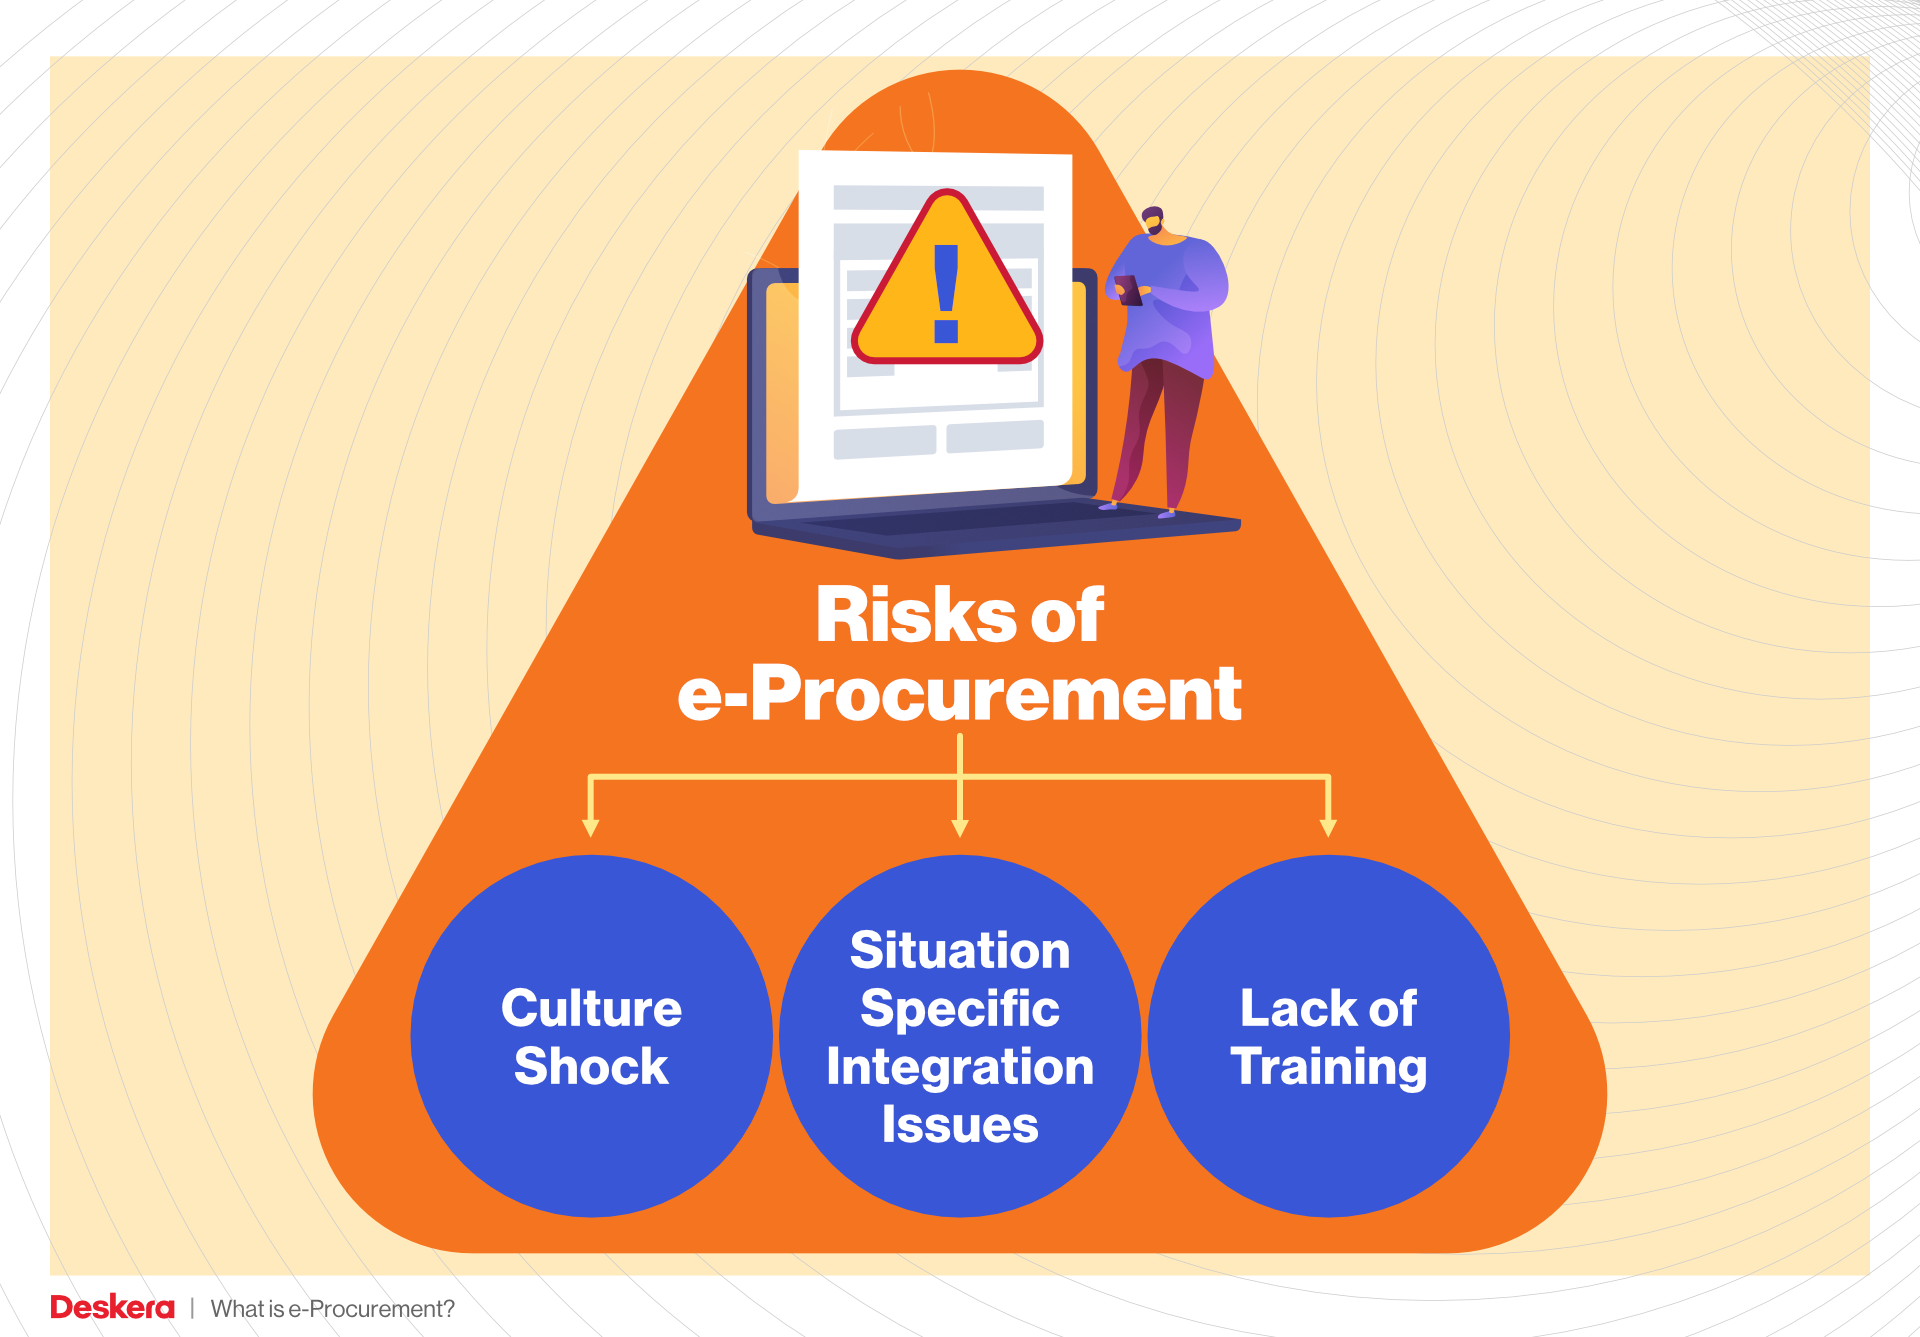 Risks of e-Procurement